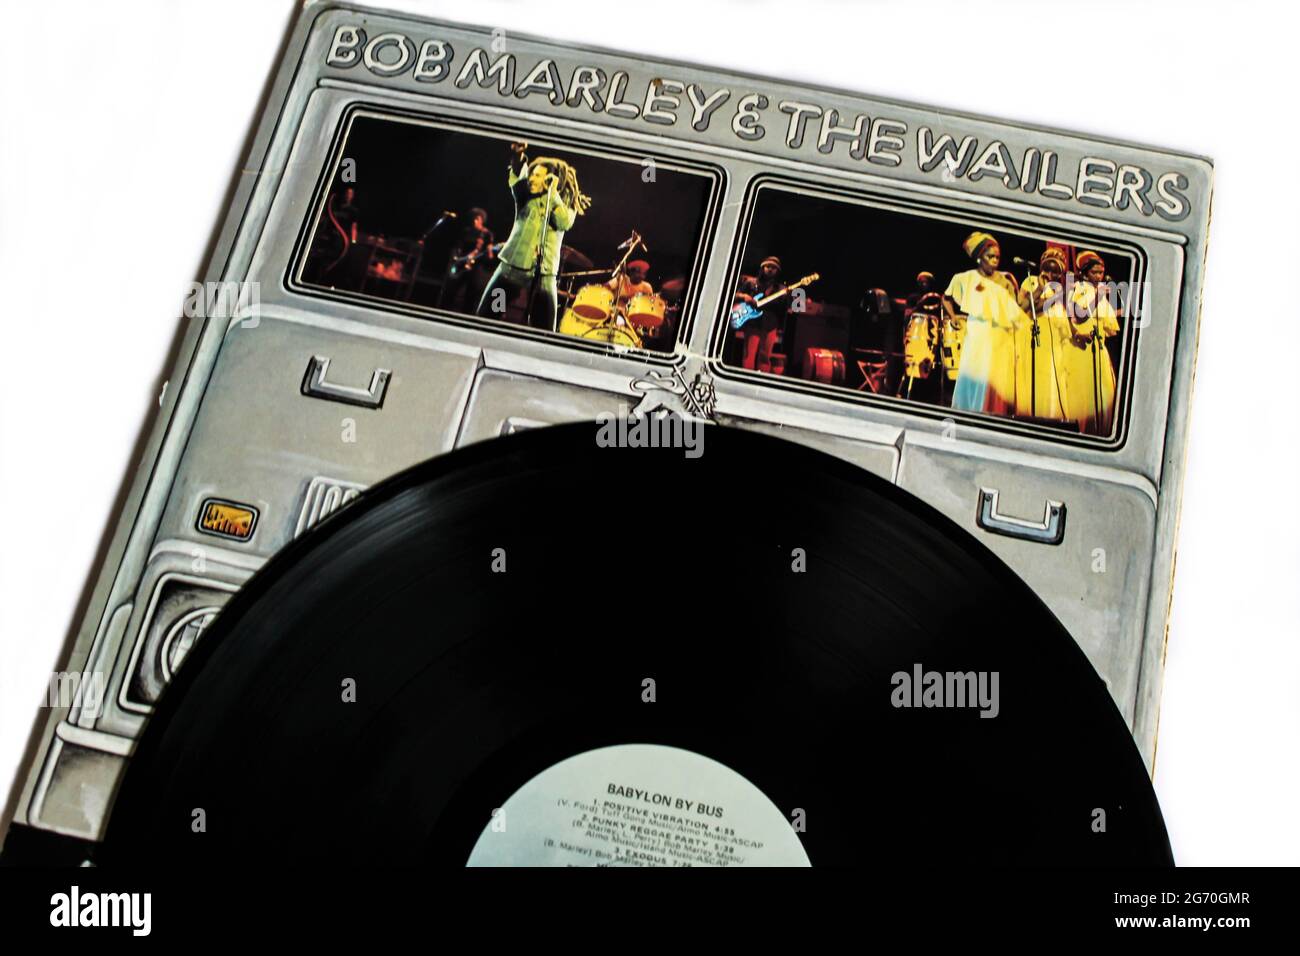 Reggae-Künstler, Bob Marley und das Wailers-Musikalbum auf Vinyl-LP. Titel: Babylon by Bus Albumcover Stockfoto